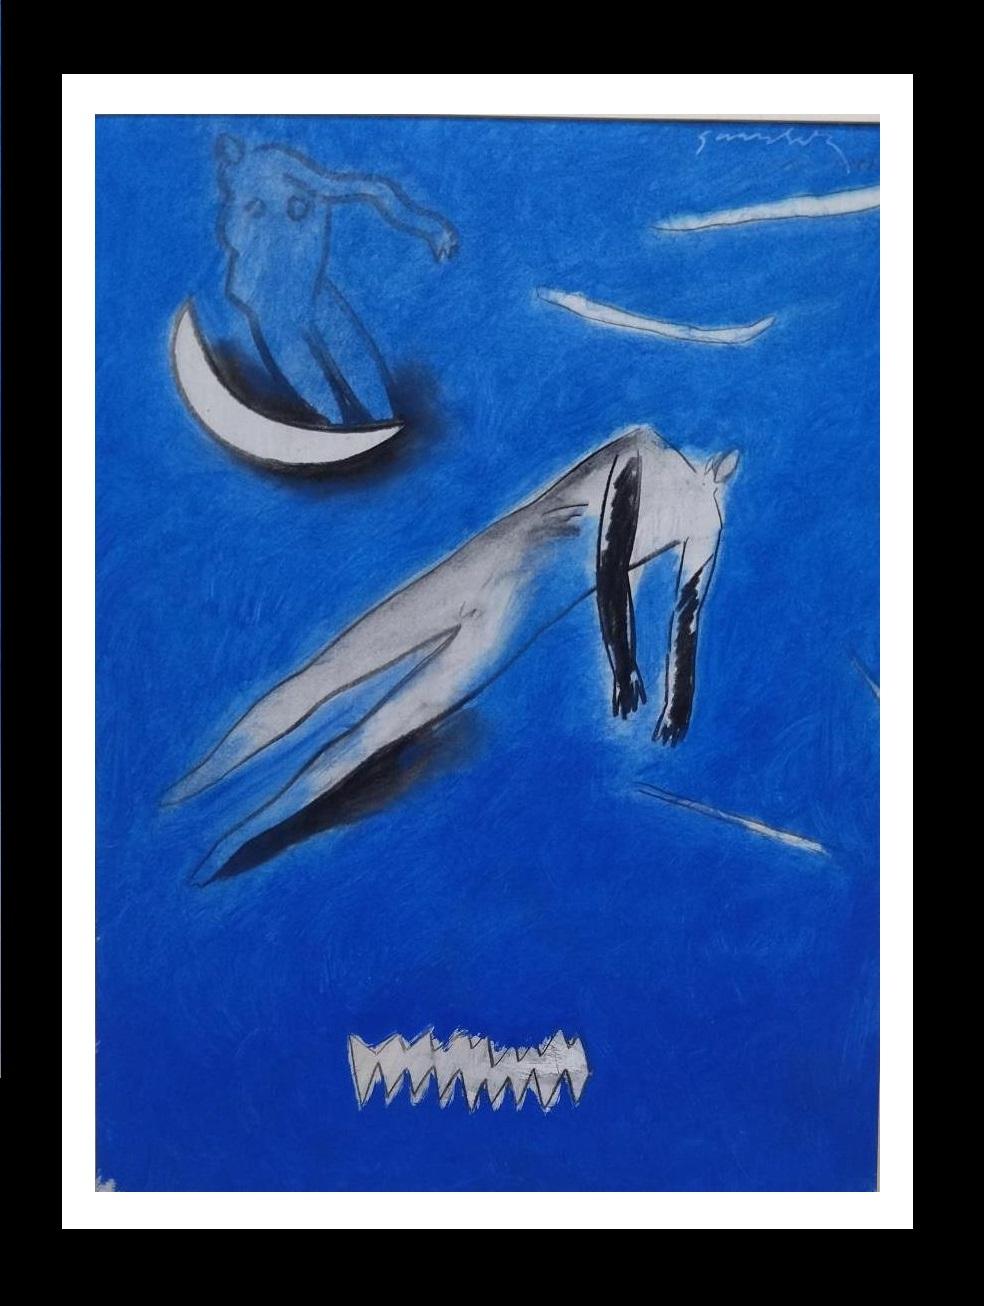 Originalkunstwerk des spanischen Künstlers GERARD SALA.
 "-NO TITLE" Original-Mischtechnik-Gemälde
 gerahmt
Gerard Sala i Rosselló wurde am 9. März 1942 in Tona (Osona) geboren. Seine Kindheit verbrachte er in Palma de Mallorca. Derzeit lebt er in